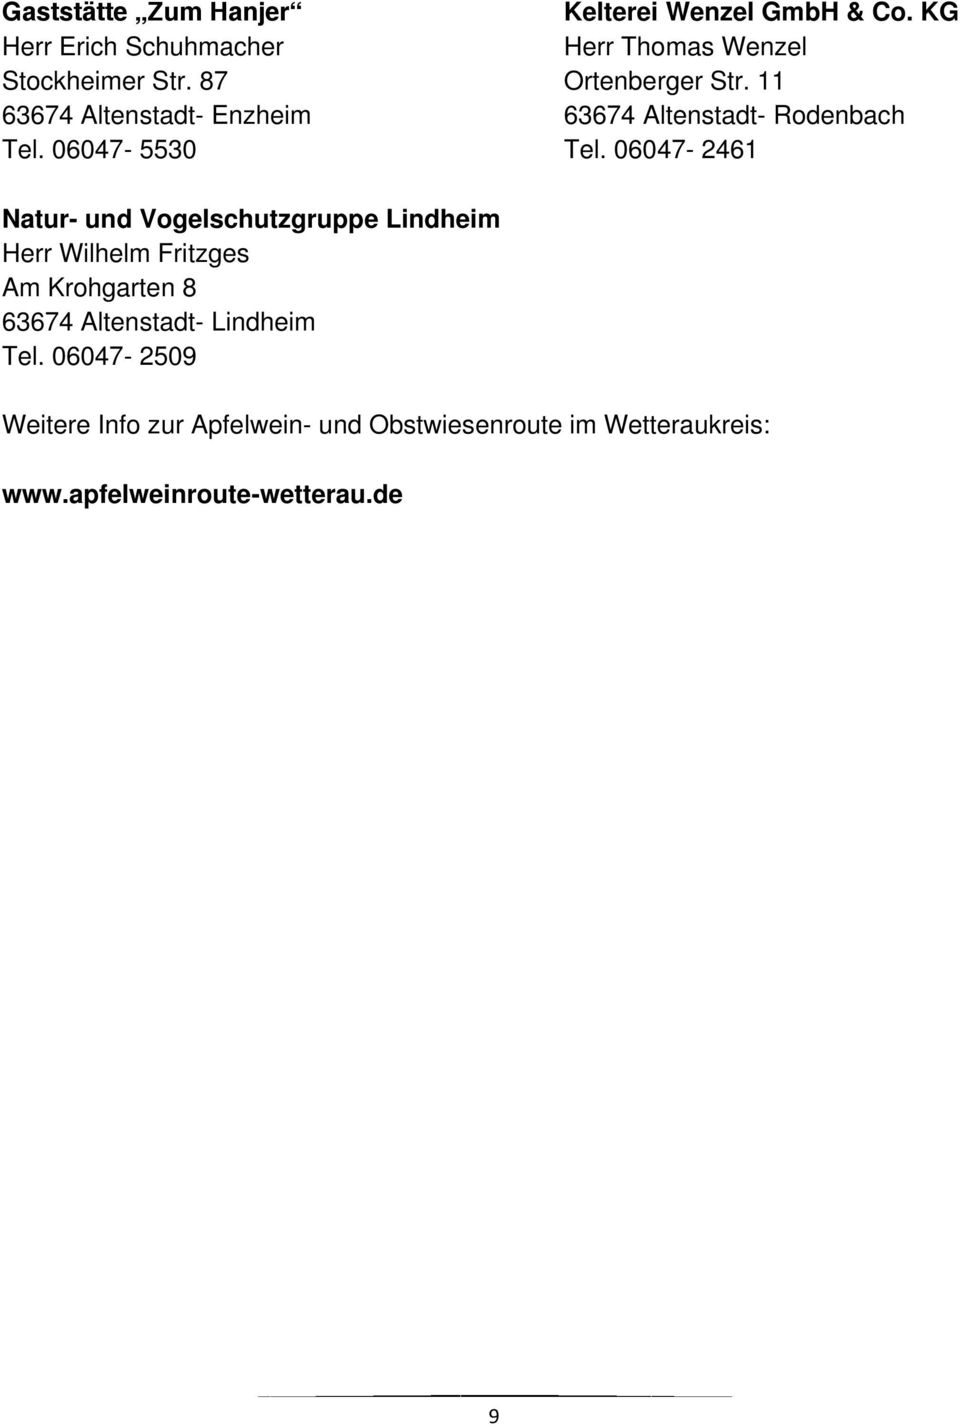 06047-2461 Natur- und Vogelschutzgruppe Lindheim Herr Wilhelm Fritzges Am Krohgarten 8 63674 Altenstadt-